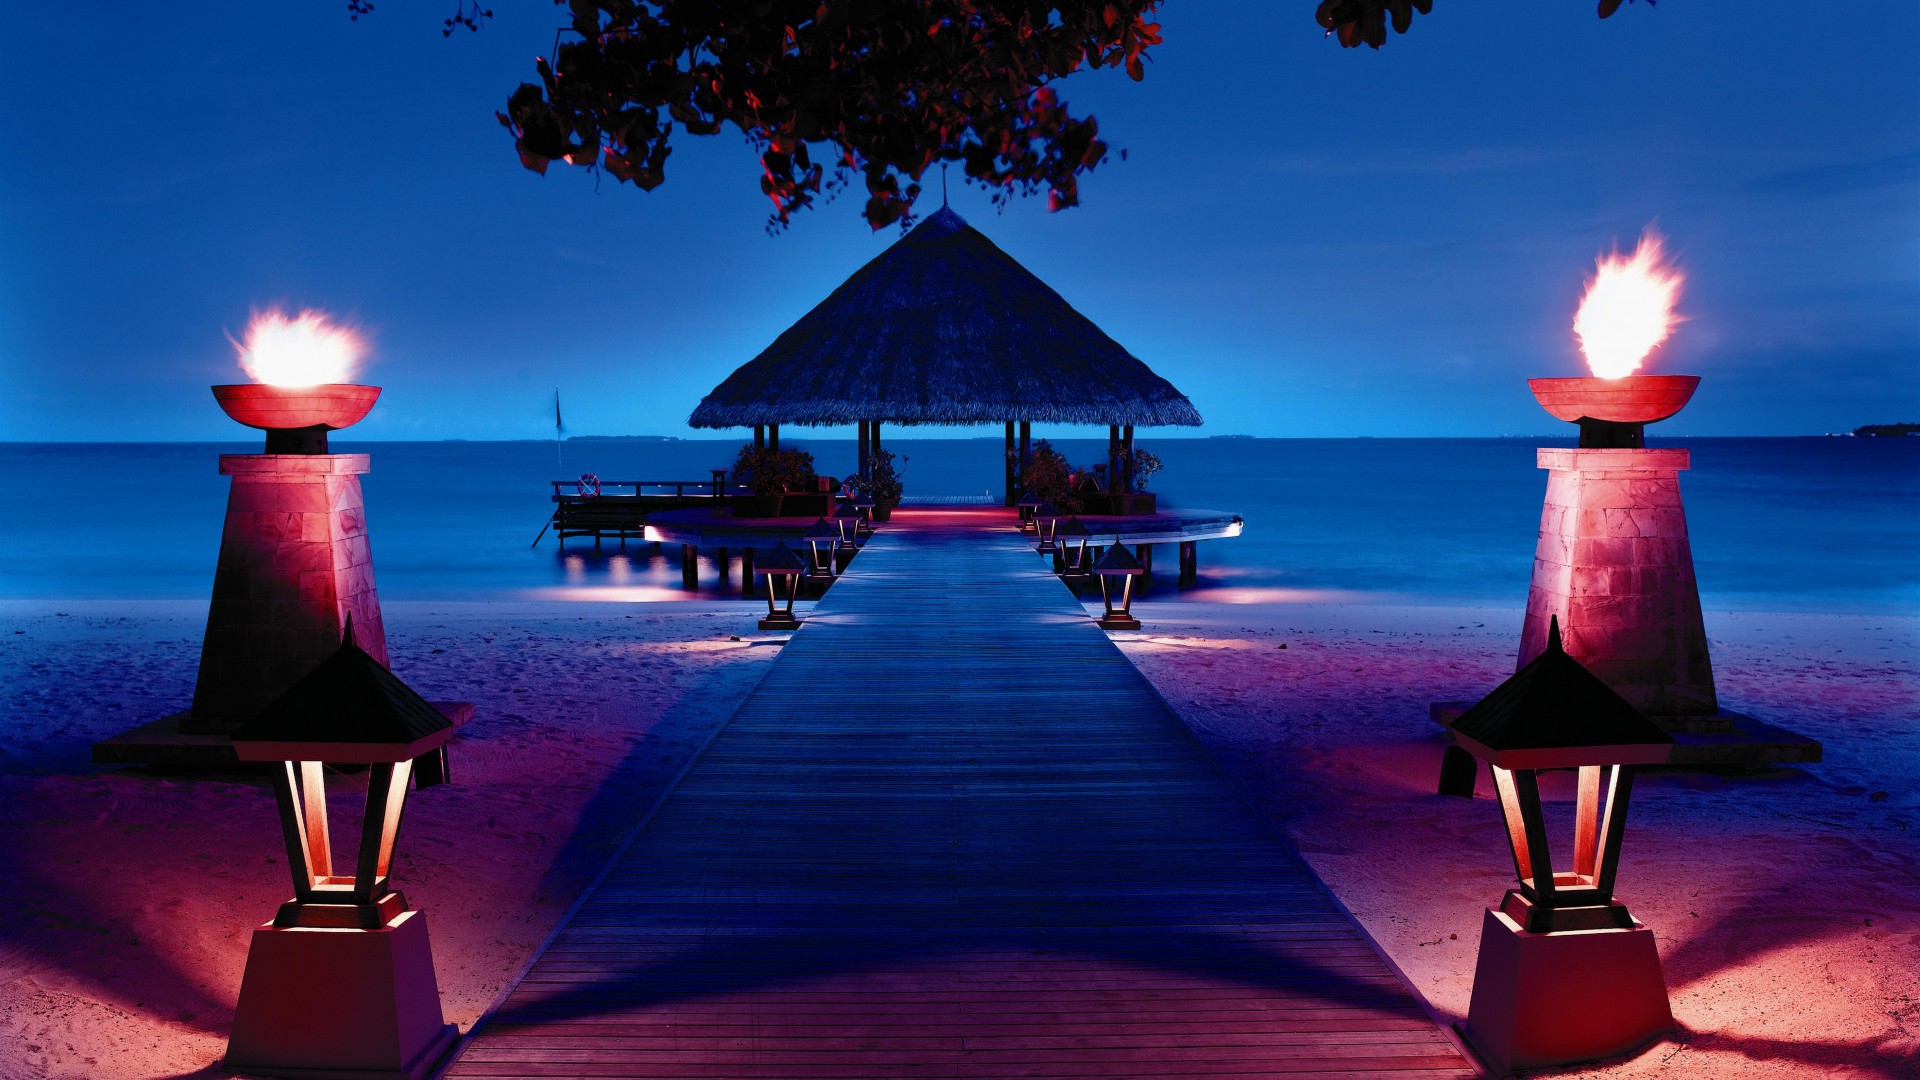 Angsana Resort & Spa, Ihuru, Maldives, Best Hotels of 2017, Best beaches of 2017, tourism, travel, resort, vacation (horizontal)